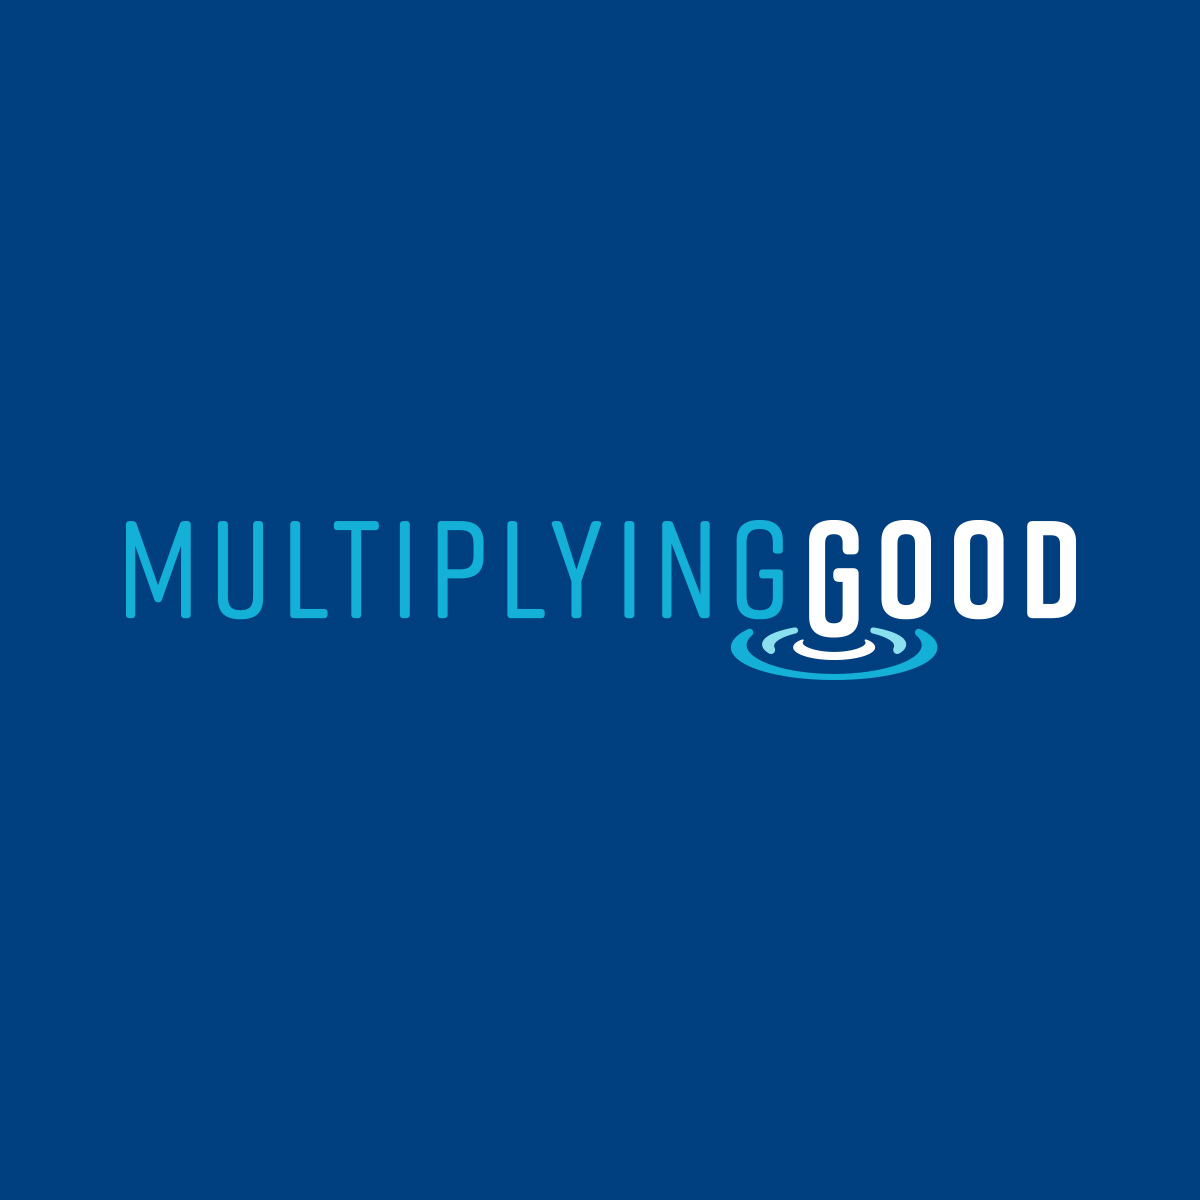 https://grafik.agency/wp-content/uploads/multiplying-good-logo@2x.jpg